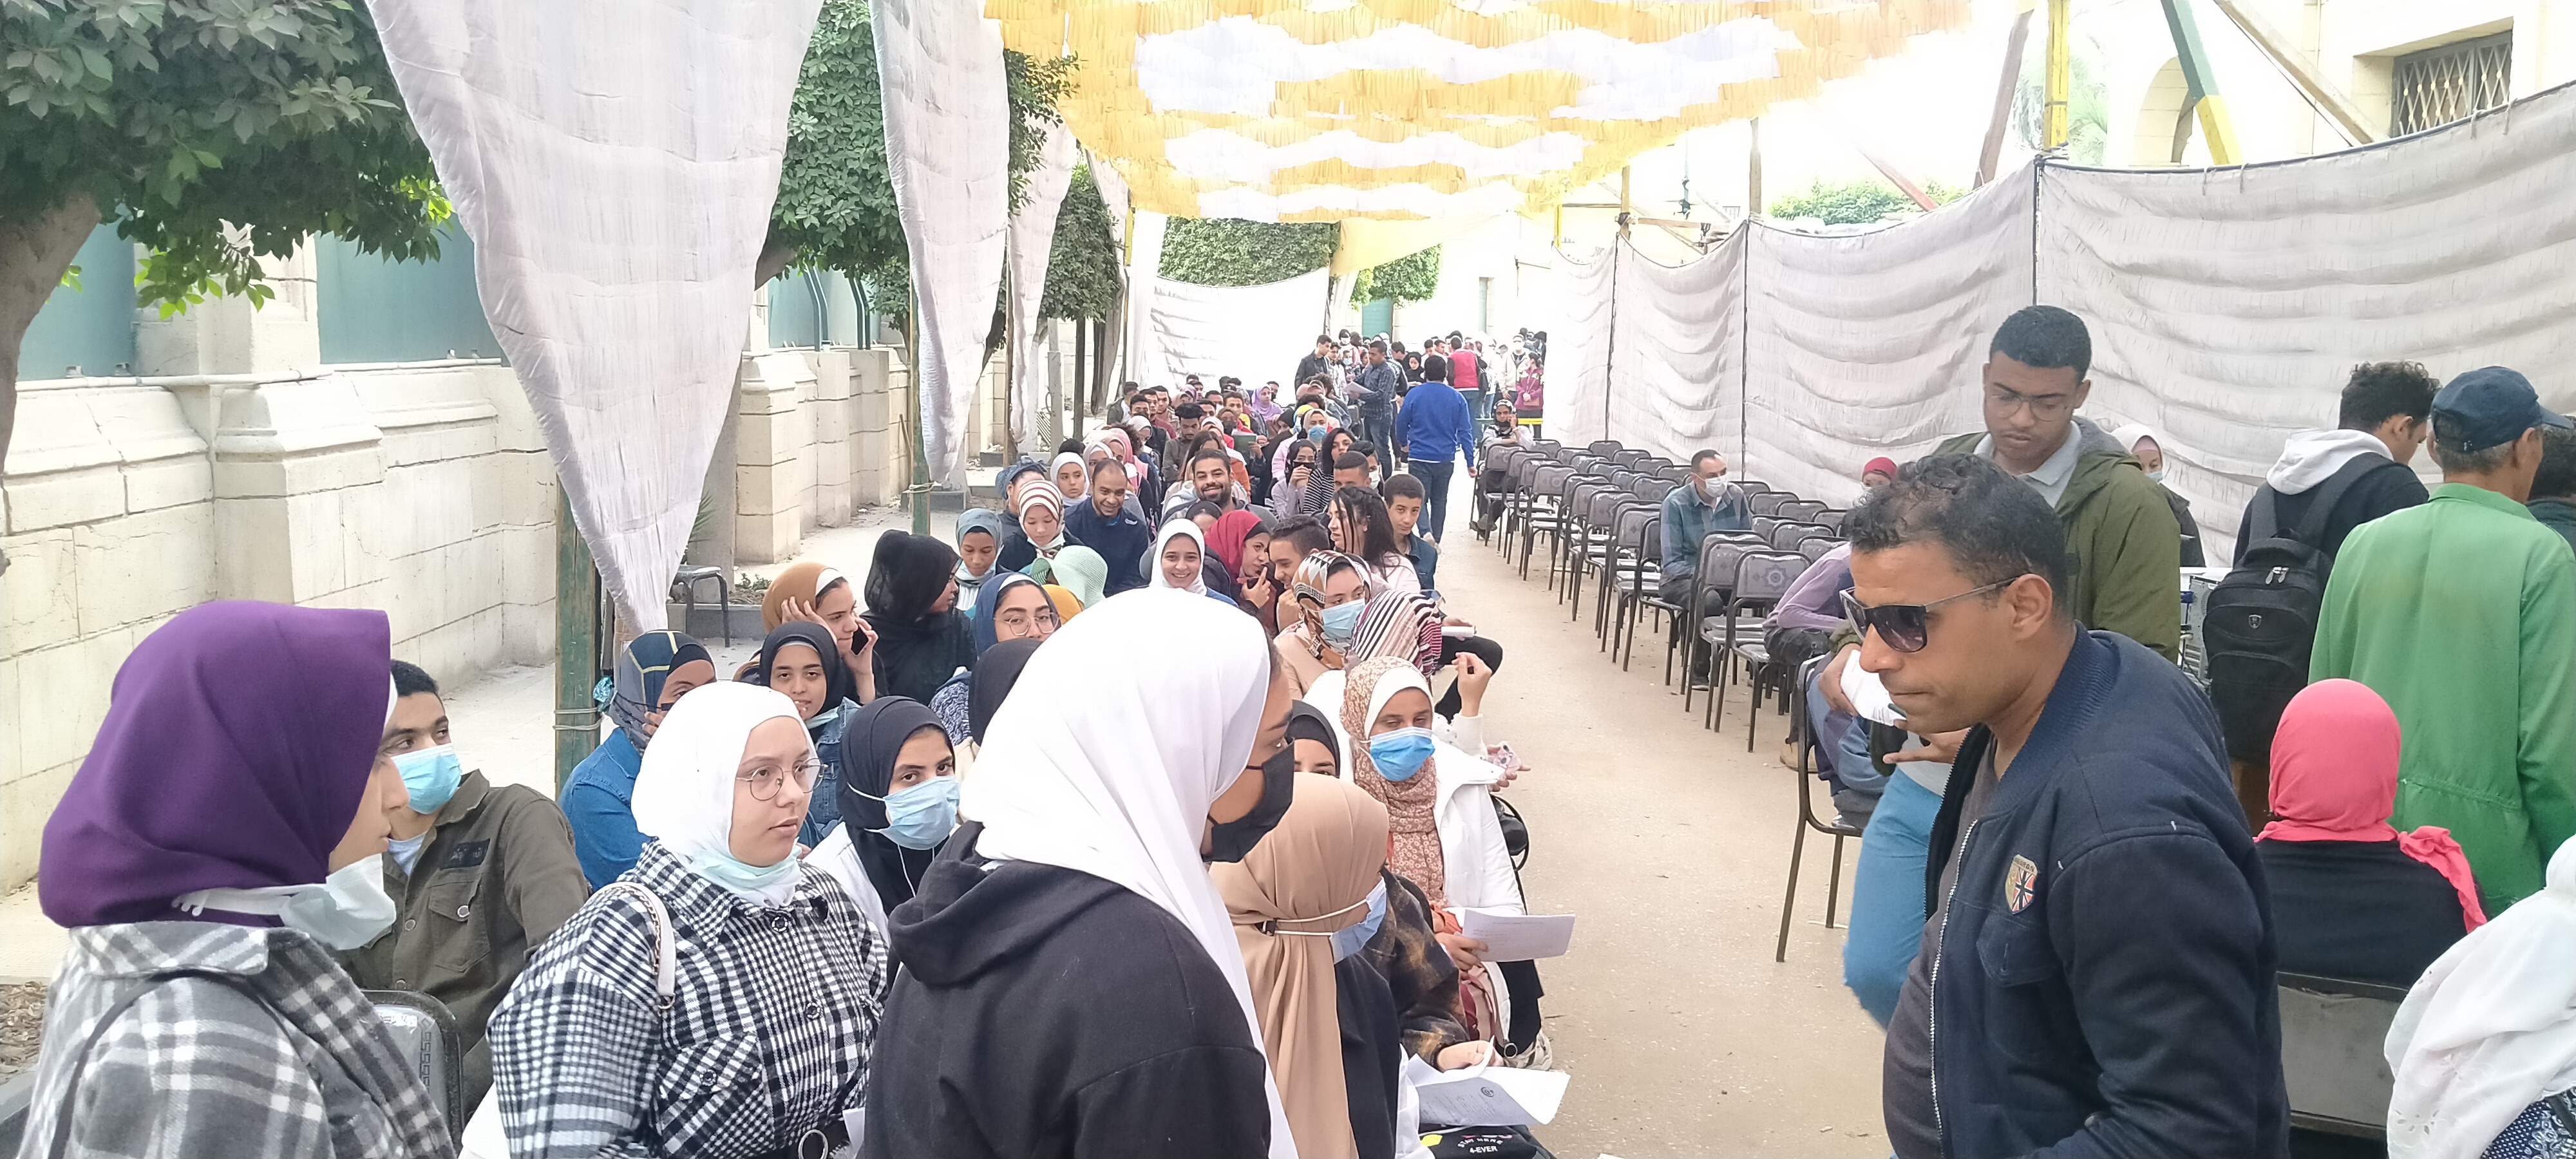 إقبال طلاب جامعة القاهرة على نقطة التطعيم المركزية للحصول على لقاح كورونا